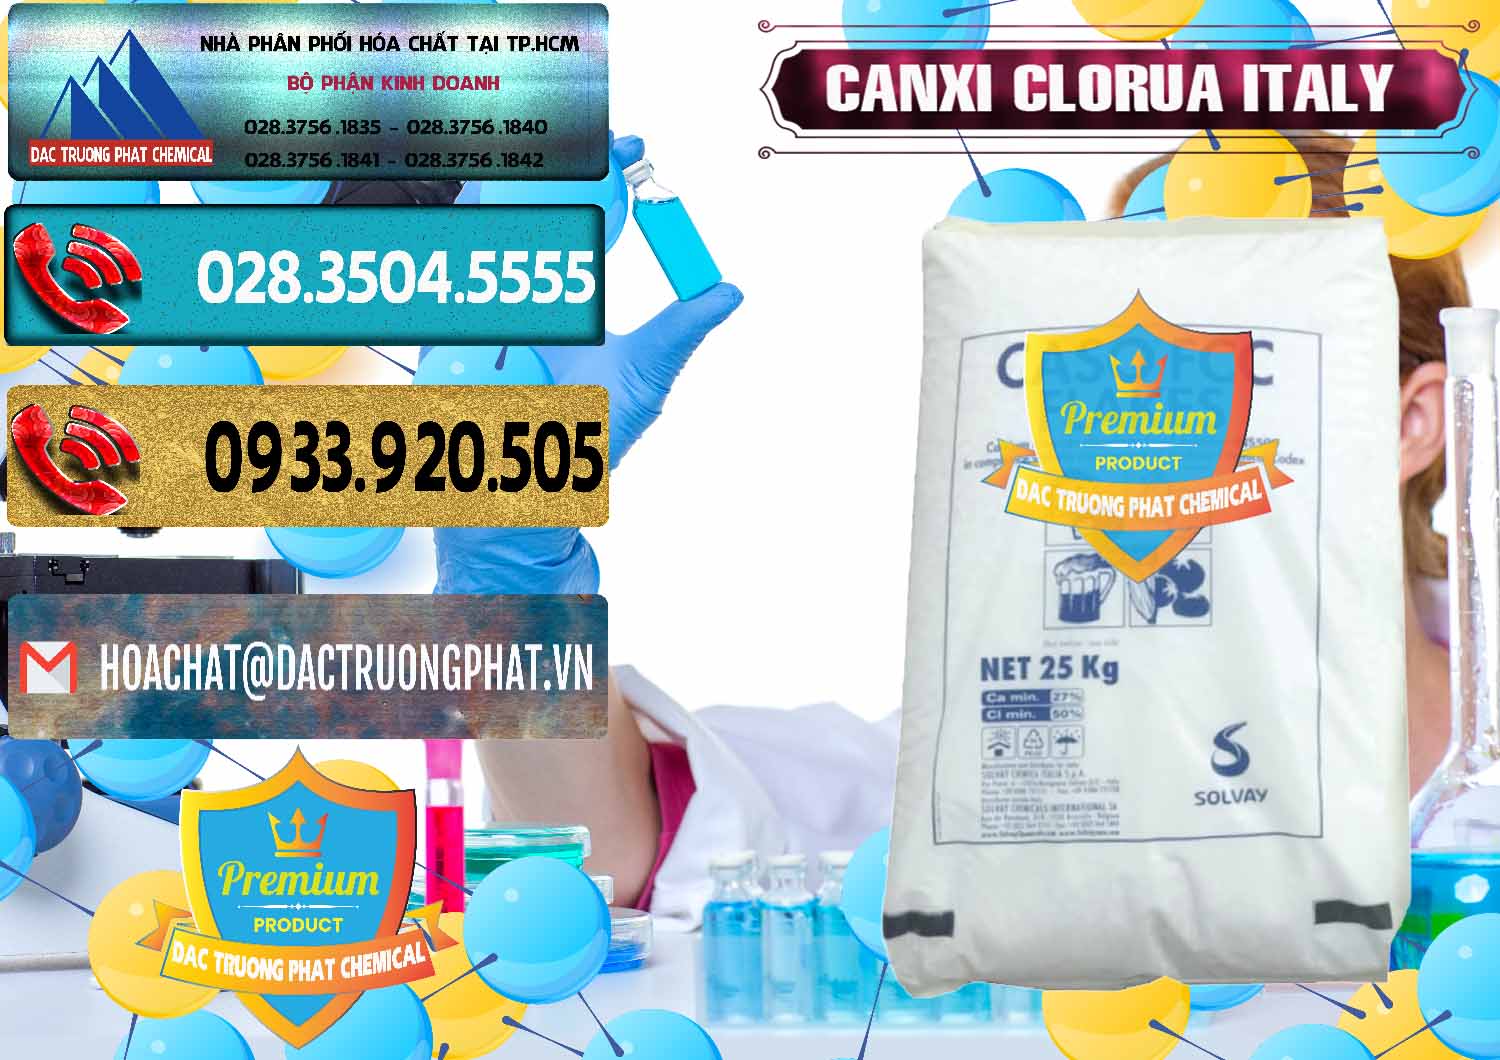 Cty chuyên bán và cung cấp CaCl2 – Canxi Clorua Food Grade Ý Italy - 0435 - Đơn vị chuyên cung cấp _ bán hóa chất tại TP.HCM - hoachatdetnhuom.com